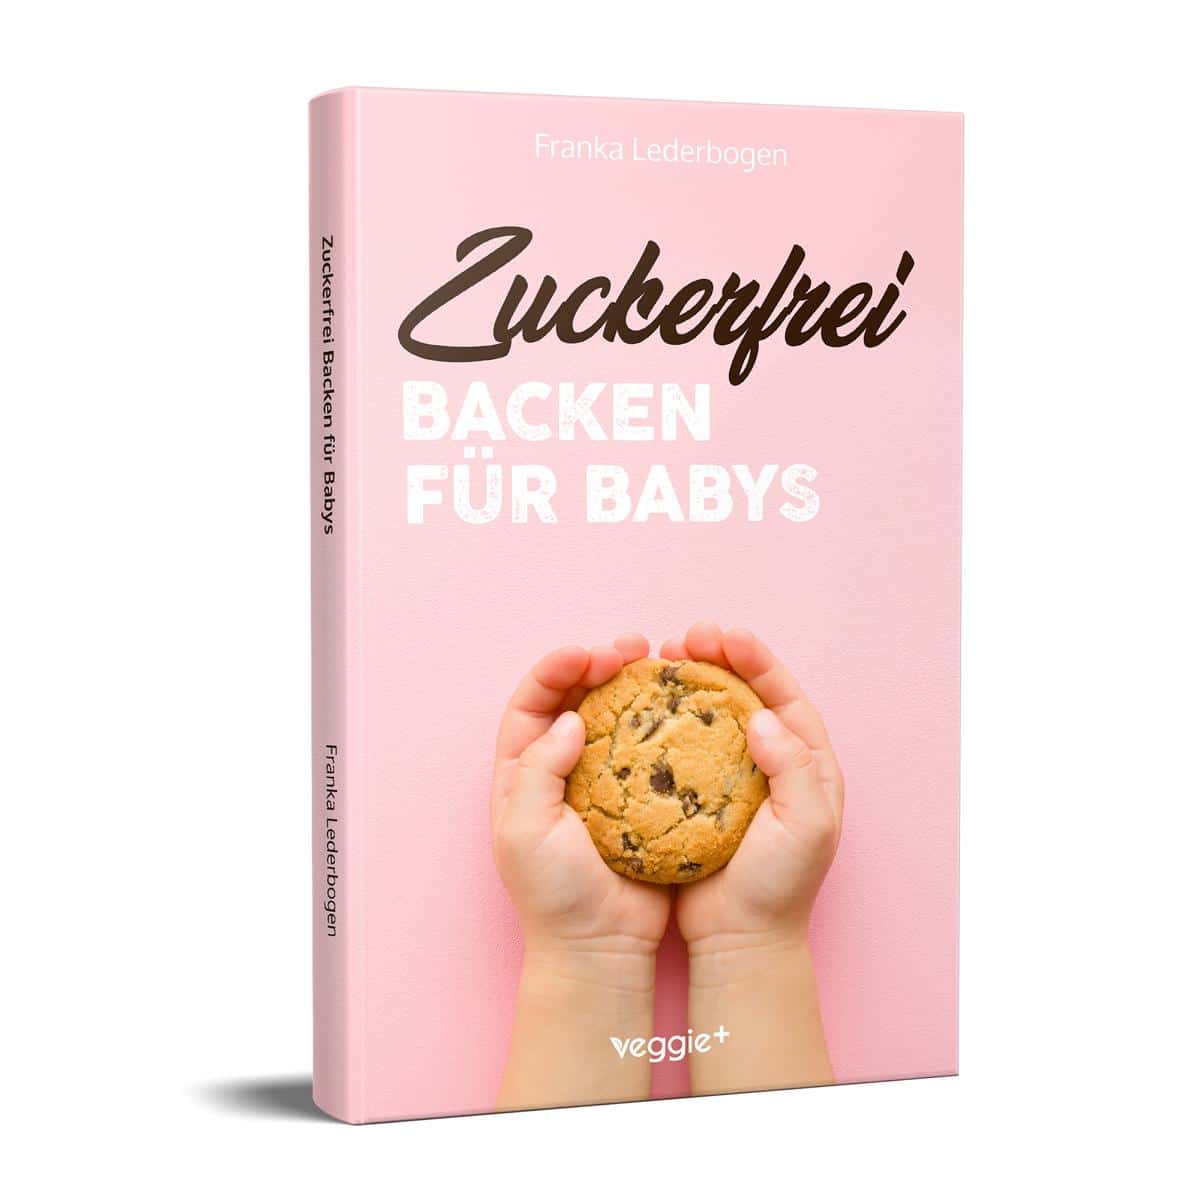 Zuckerfrei Backen für Babys: Das große Backbuch mit zuckerfreien Beikost-Rezepten speziell für Babys und Kleinkinder von Franka Lederbogen im veggie + Verlag